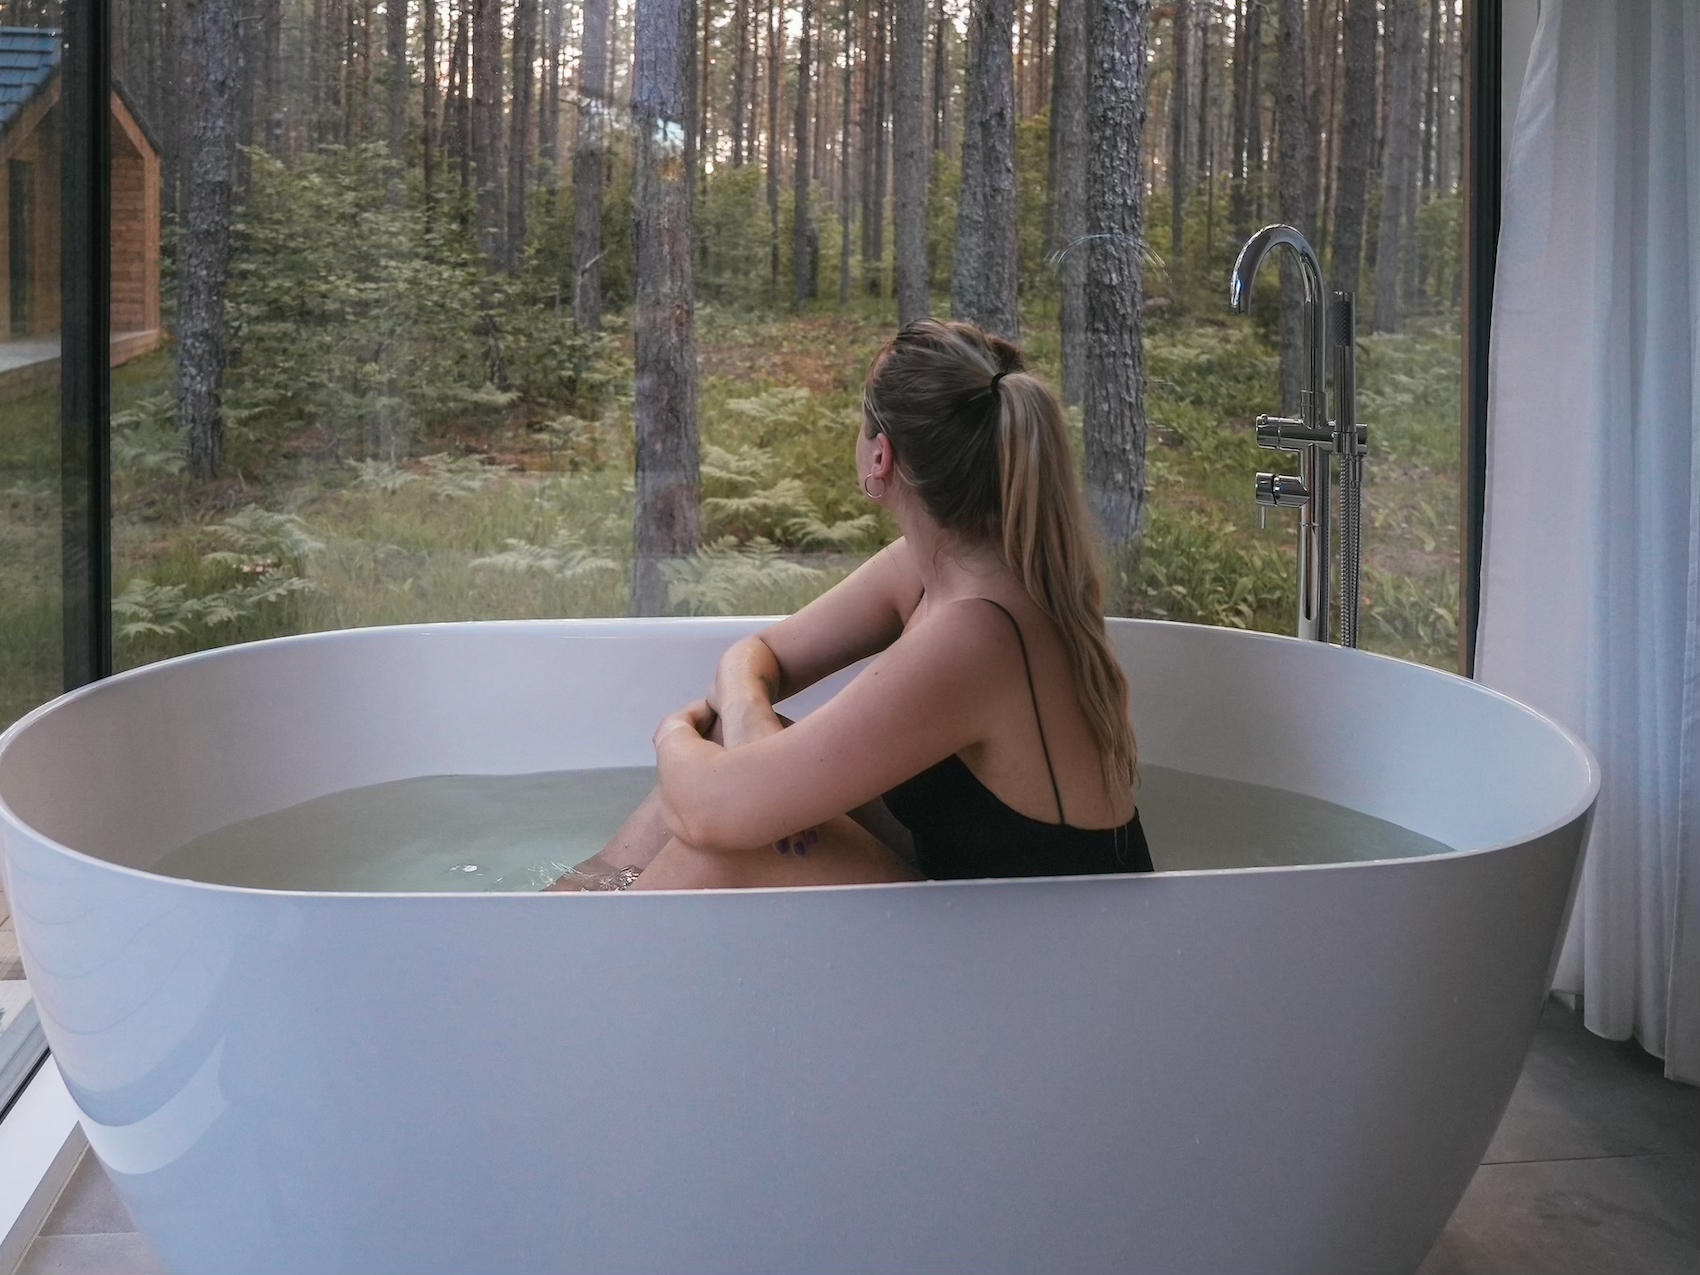 Luksuslik puhkemaja Muhu saarel WUUD Stay Pädaste romantiline puhkus kahele, parimad puhkemajad Eestis